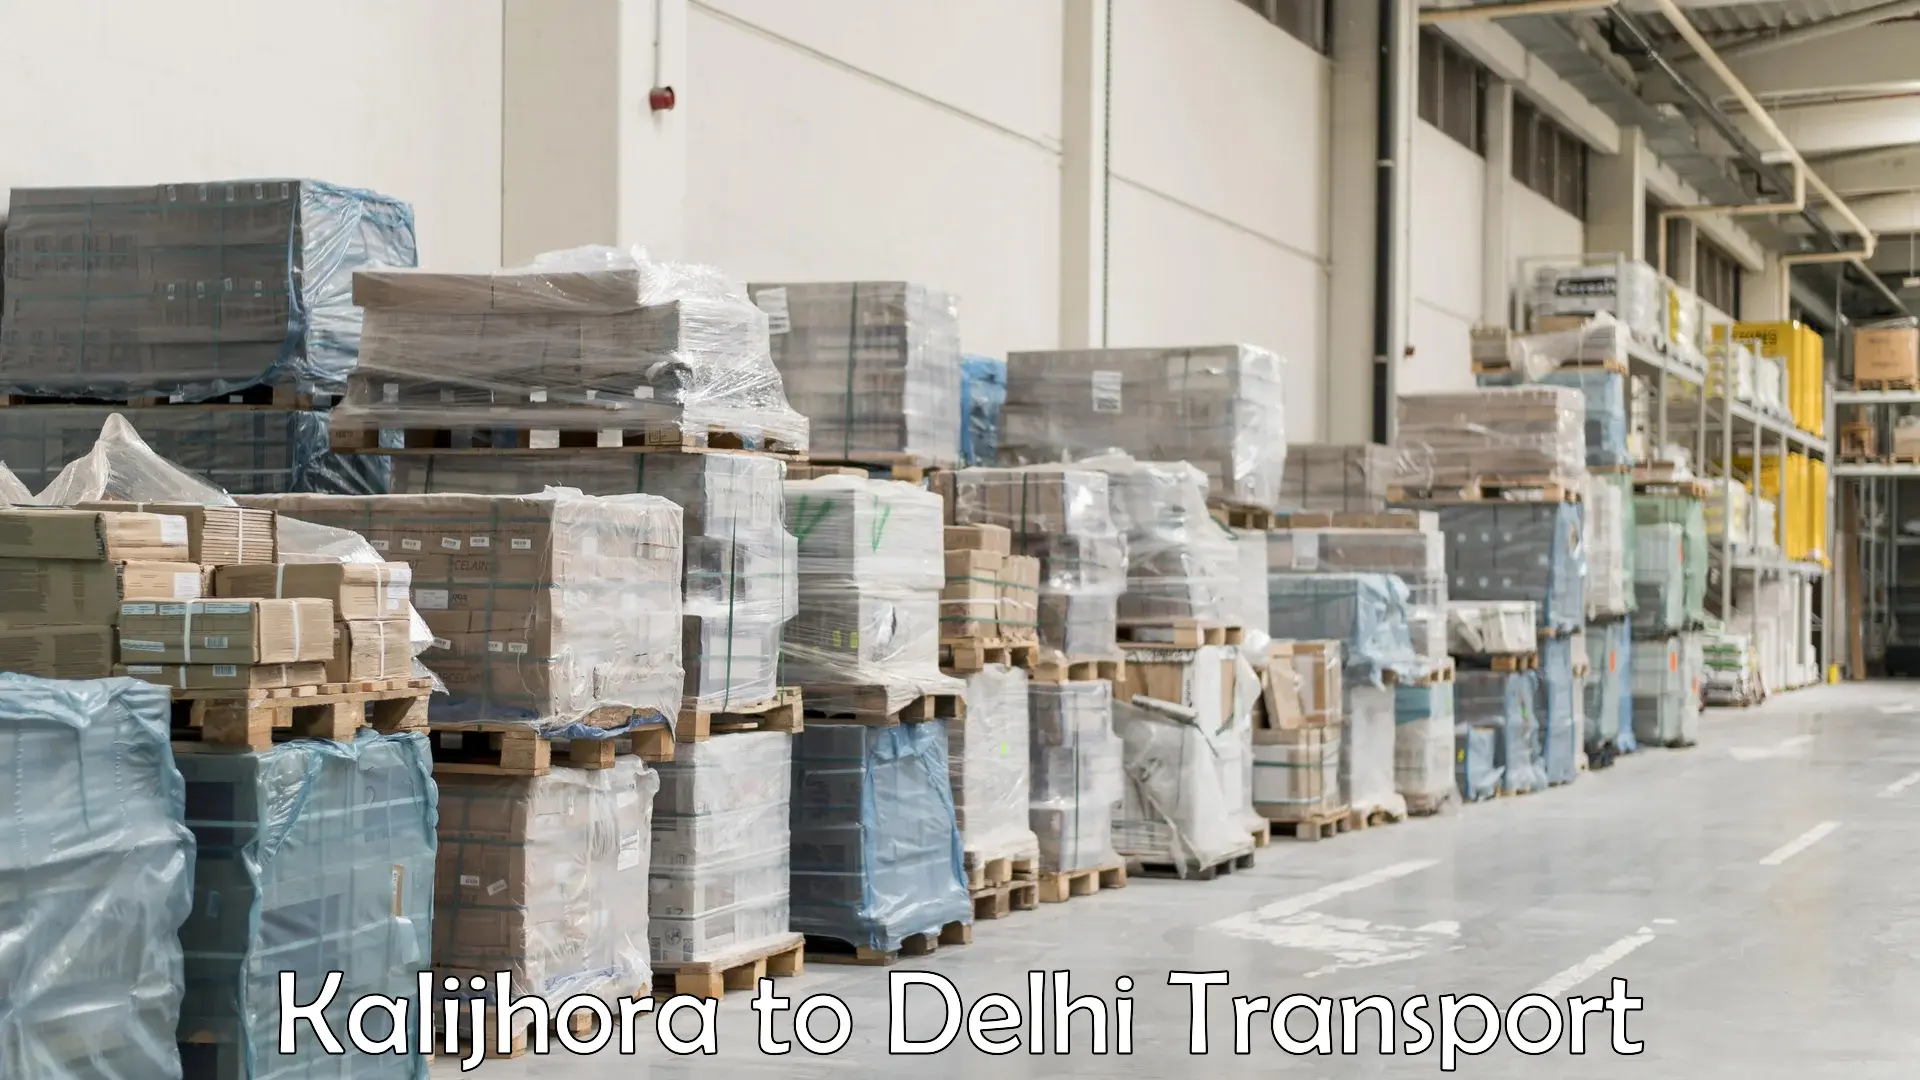 Parcel transport services Kalijhora to East Delhi